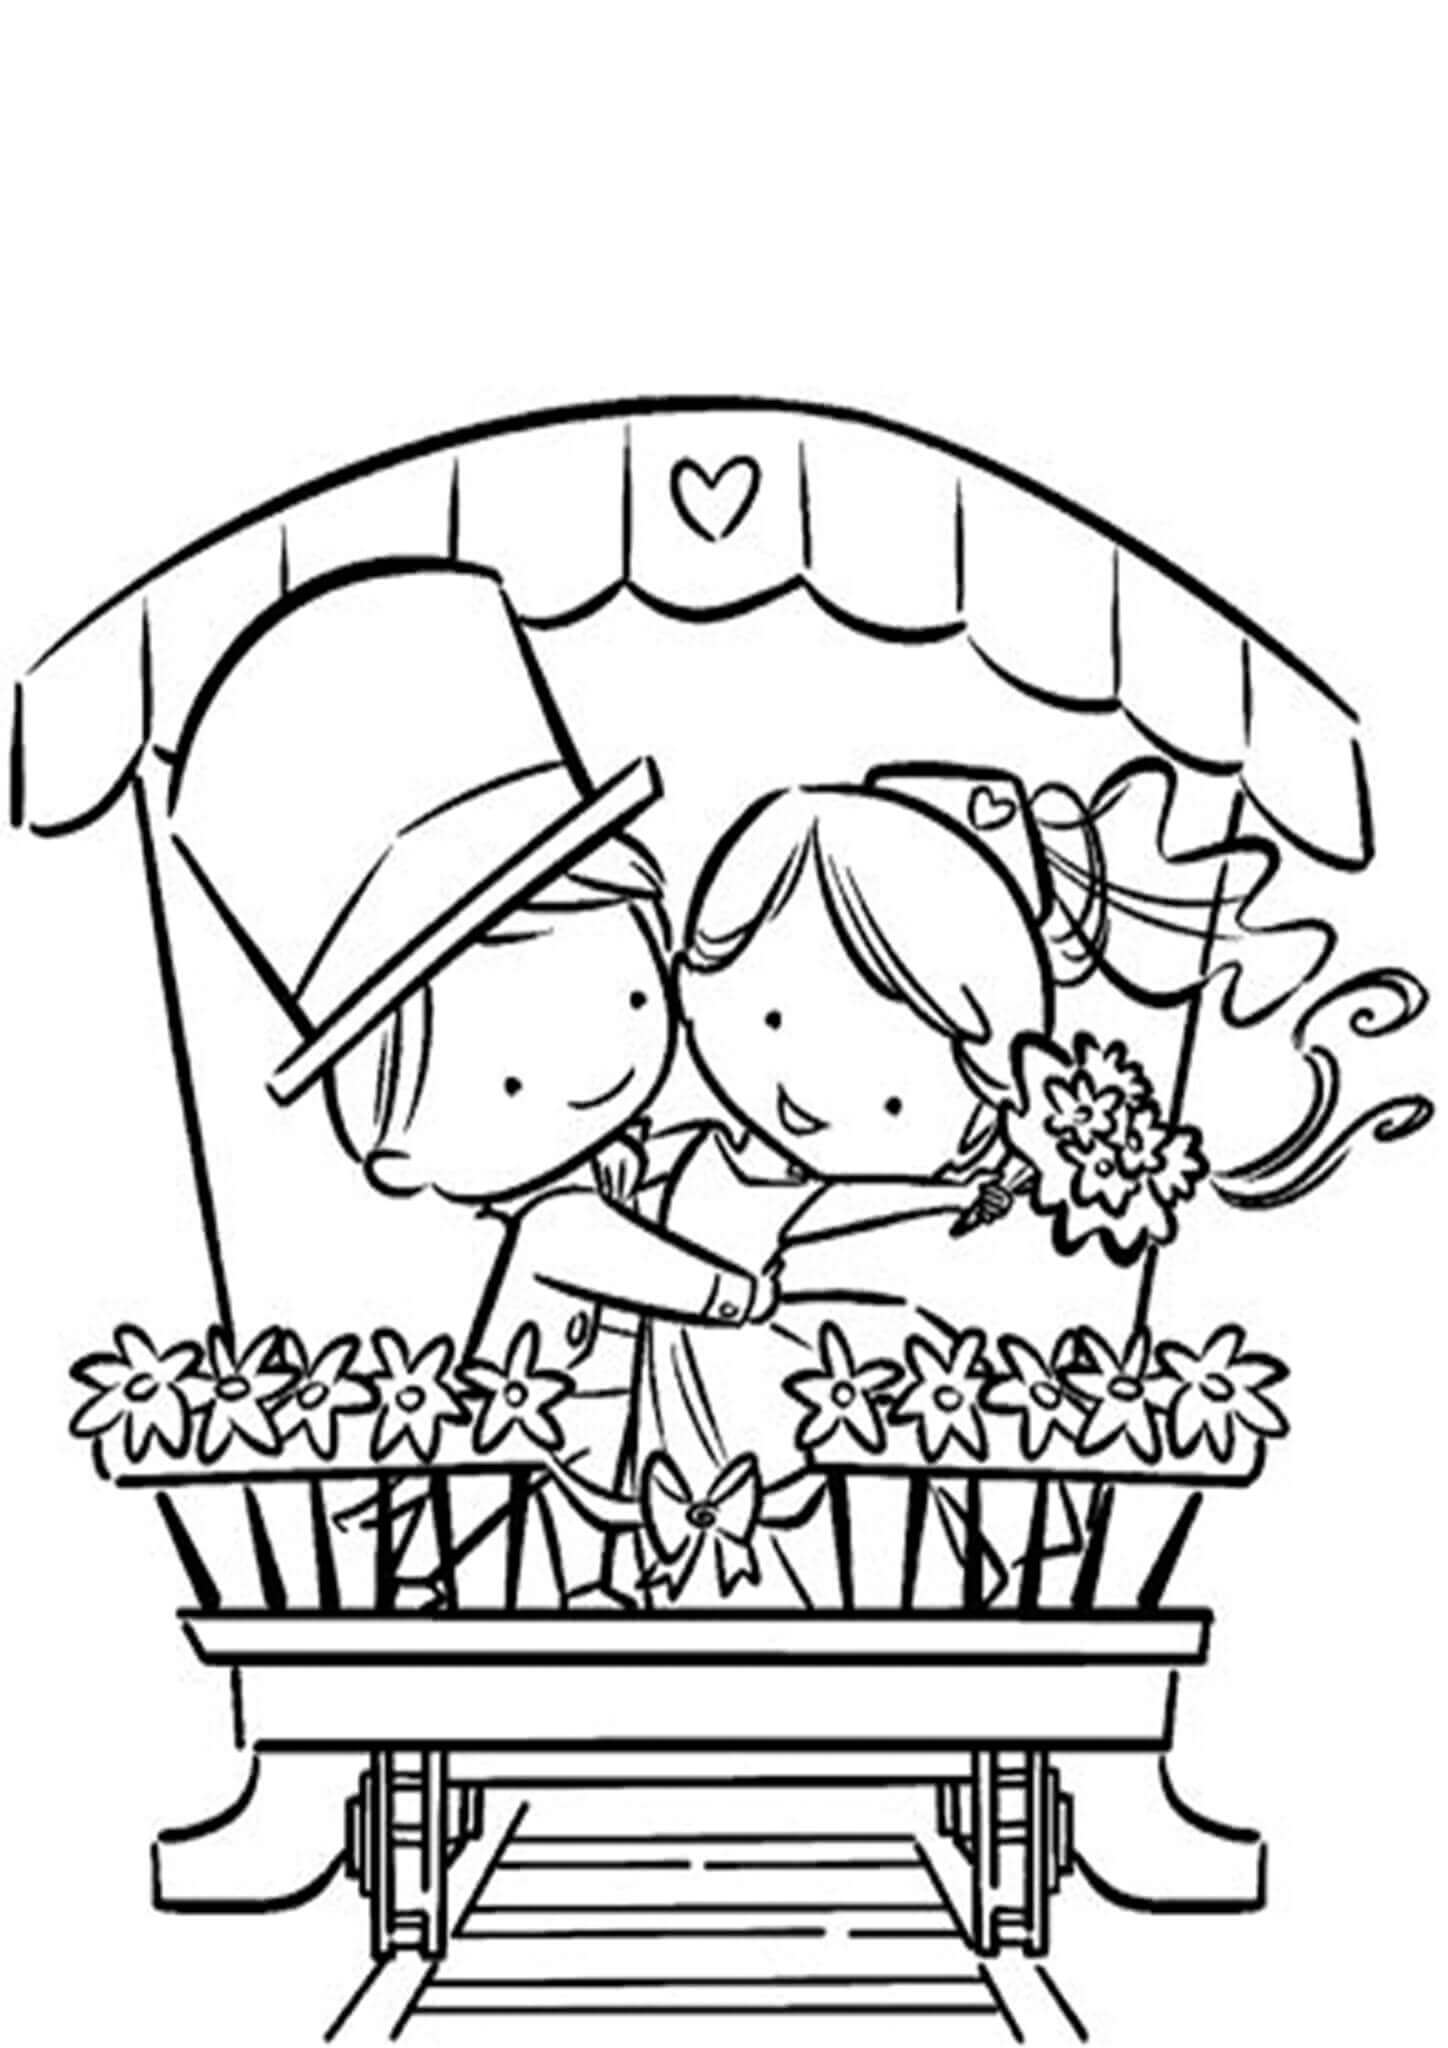 꽃을 든 신랑과 신부 그림 coloring page